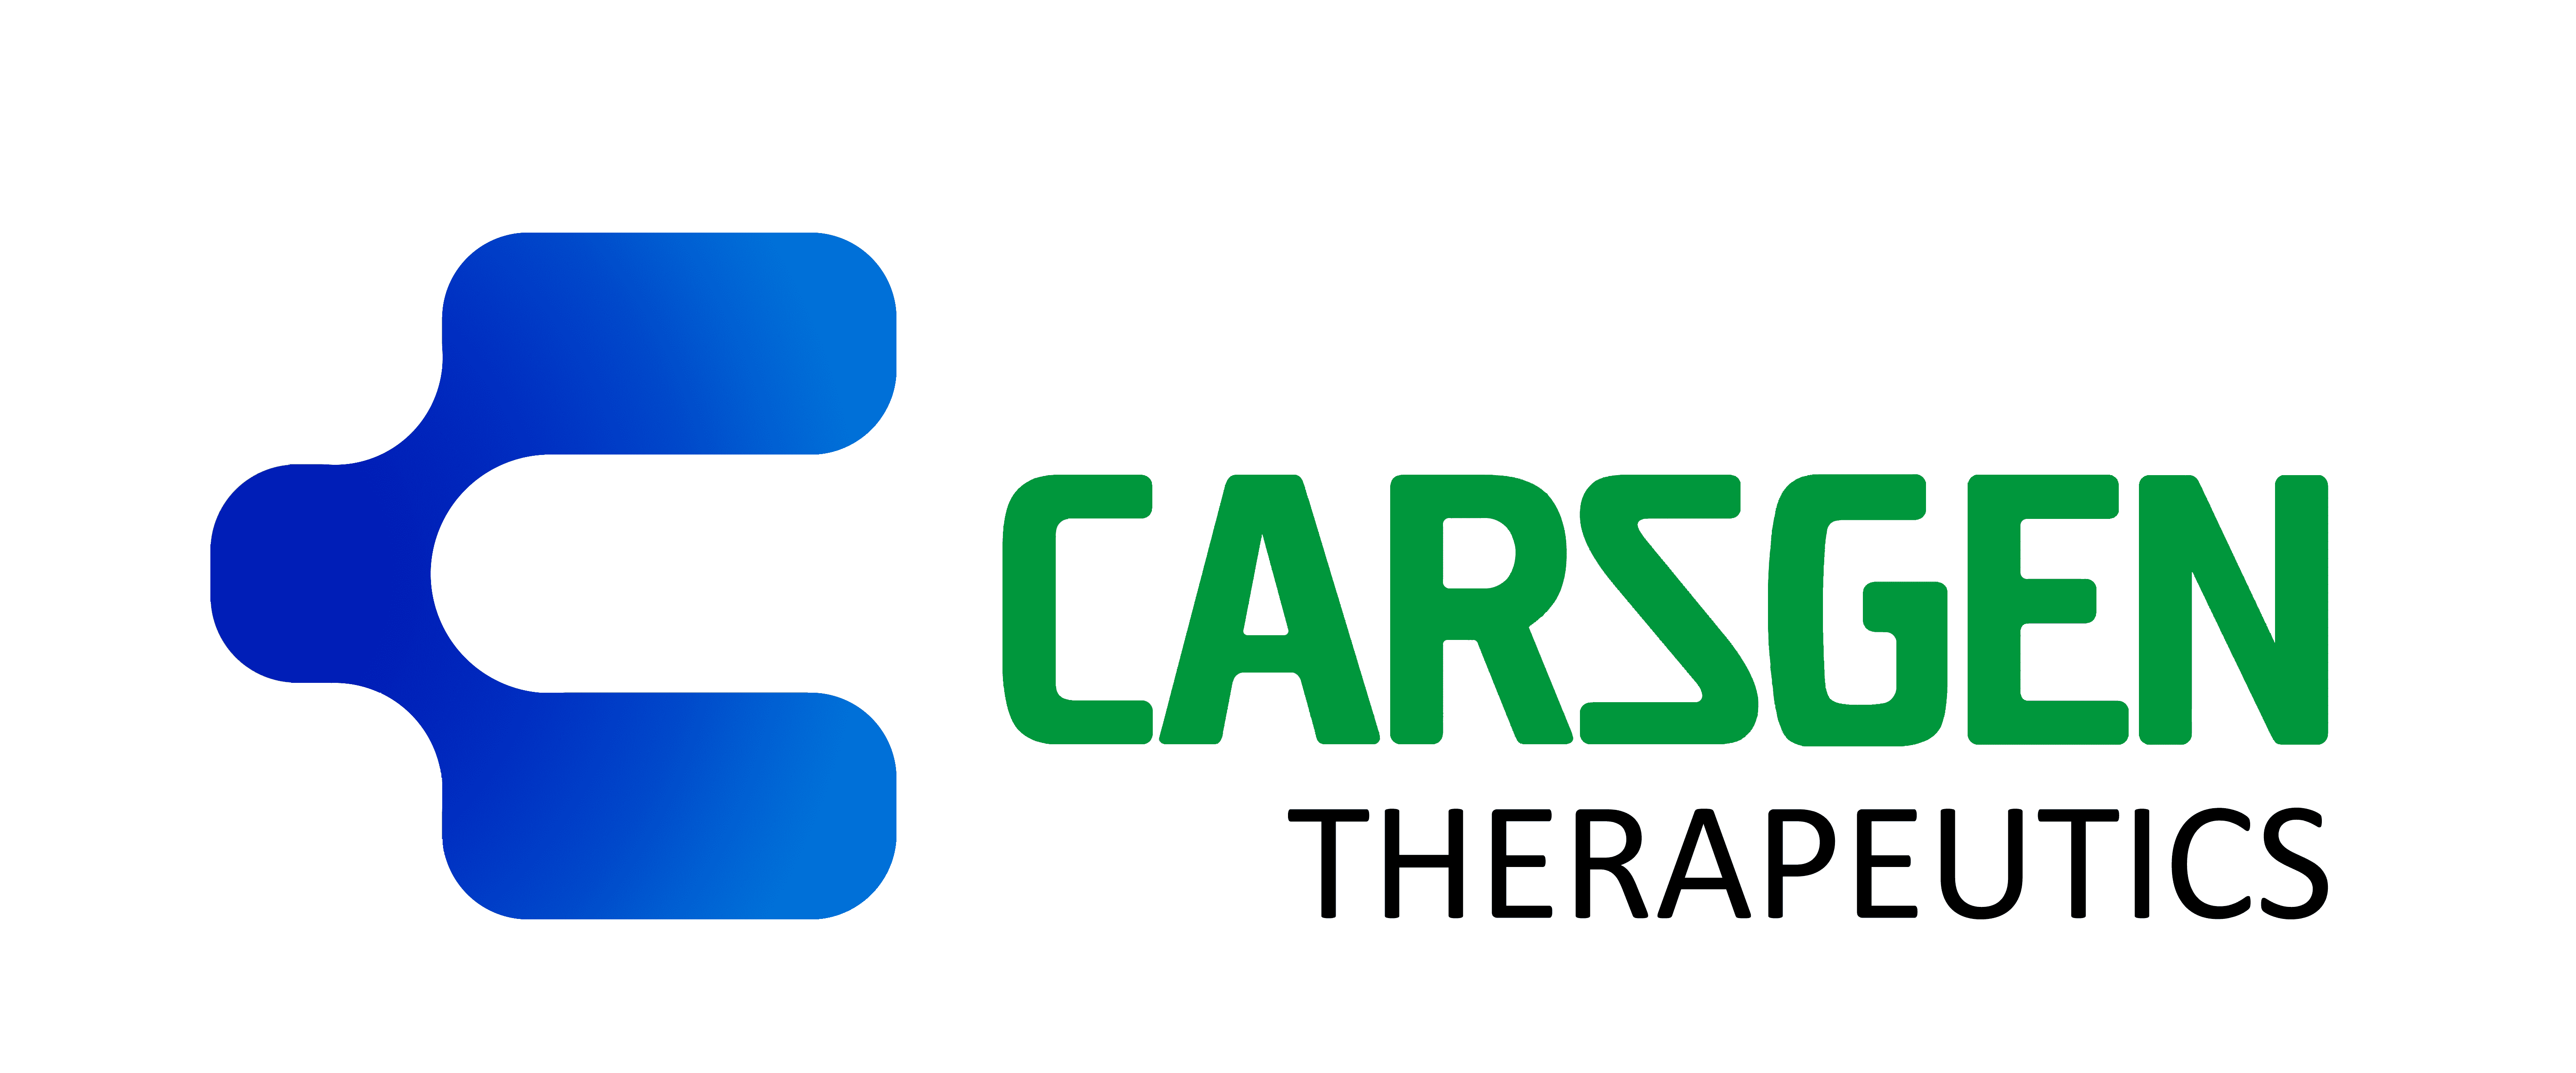 CARsgen Therapeutics